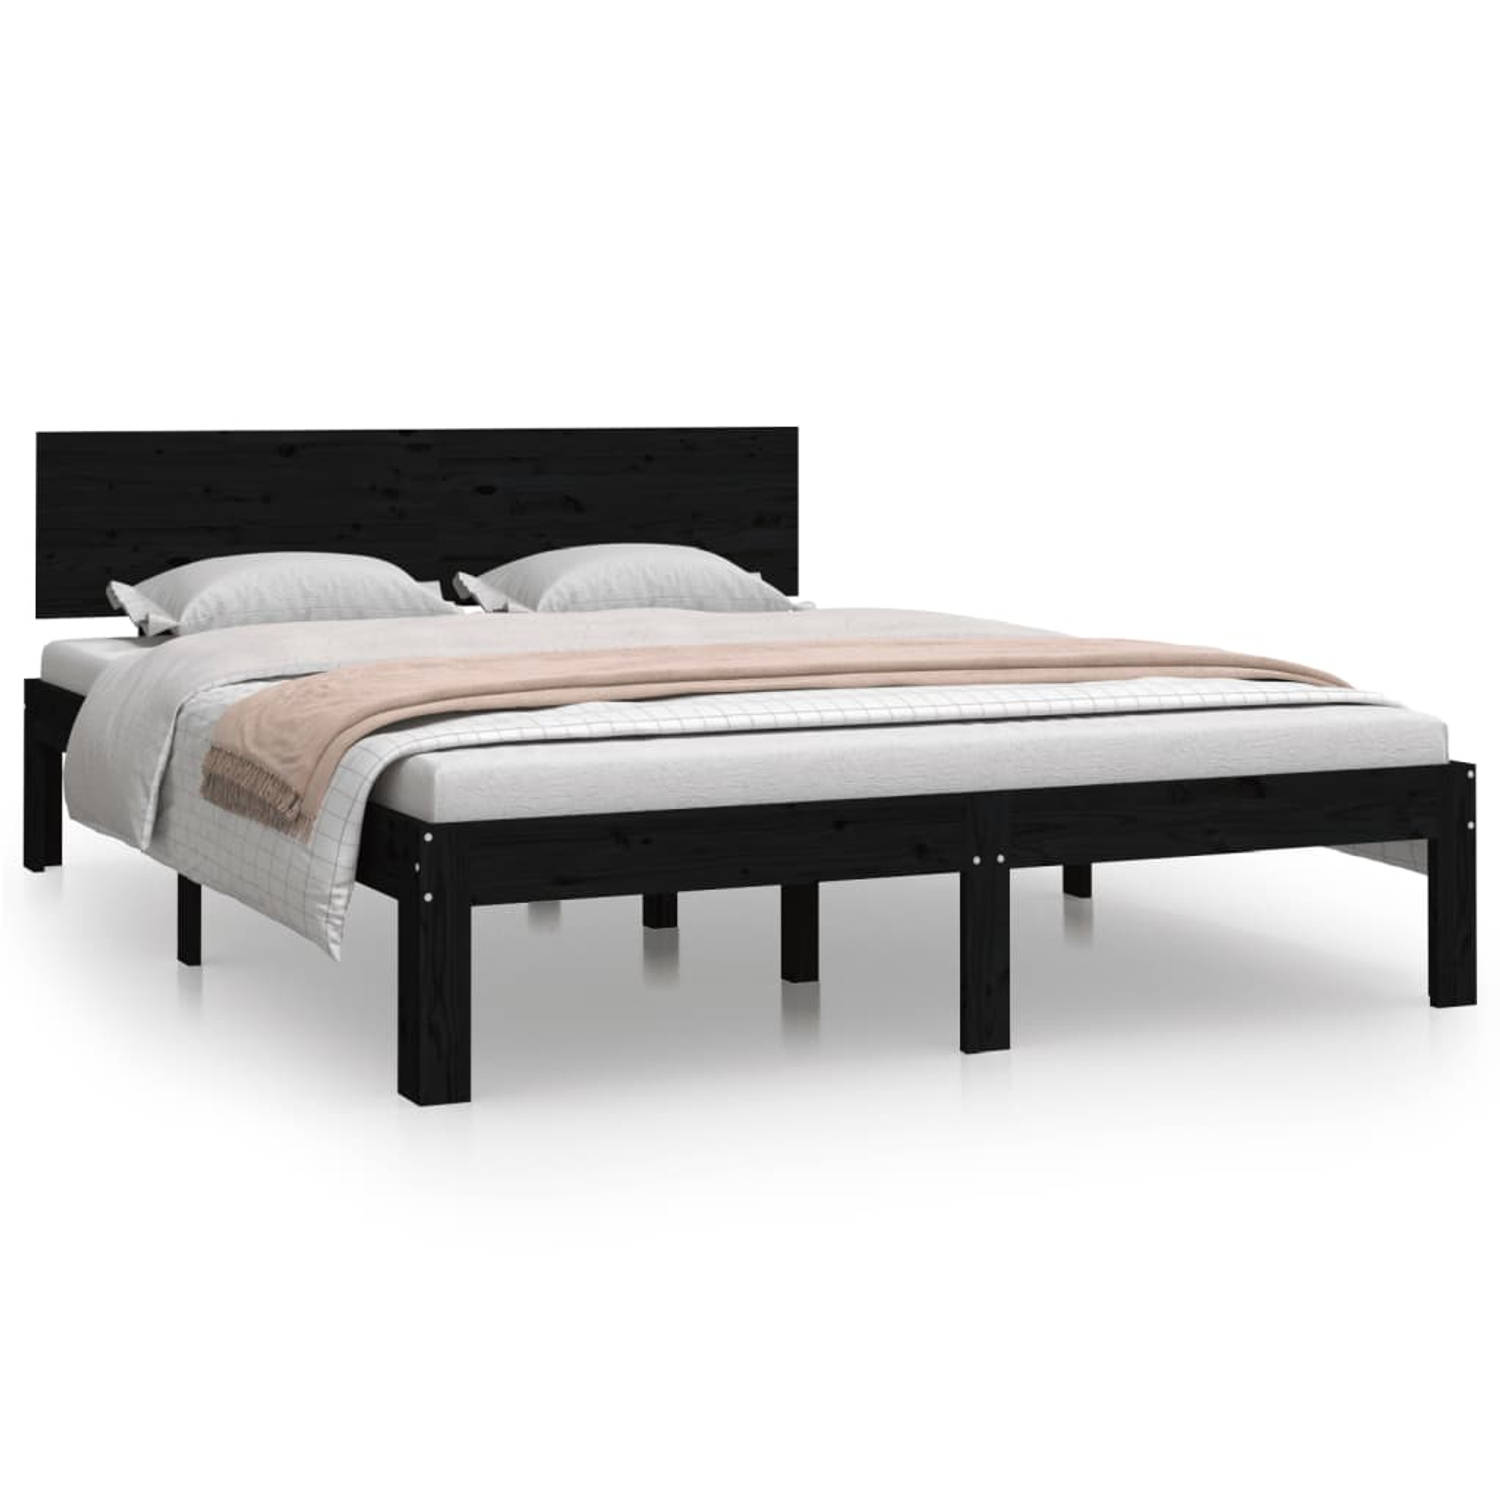 The Living Store Bedframe massief hout zwart 150x200 cm 5FT King Size - Bedframe - Bedframes - Bed - Bedbodem - Ledikant - Bed Frame - Massief Houten Bedframe - Slaapmeubel - Bedde